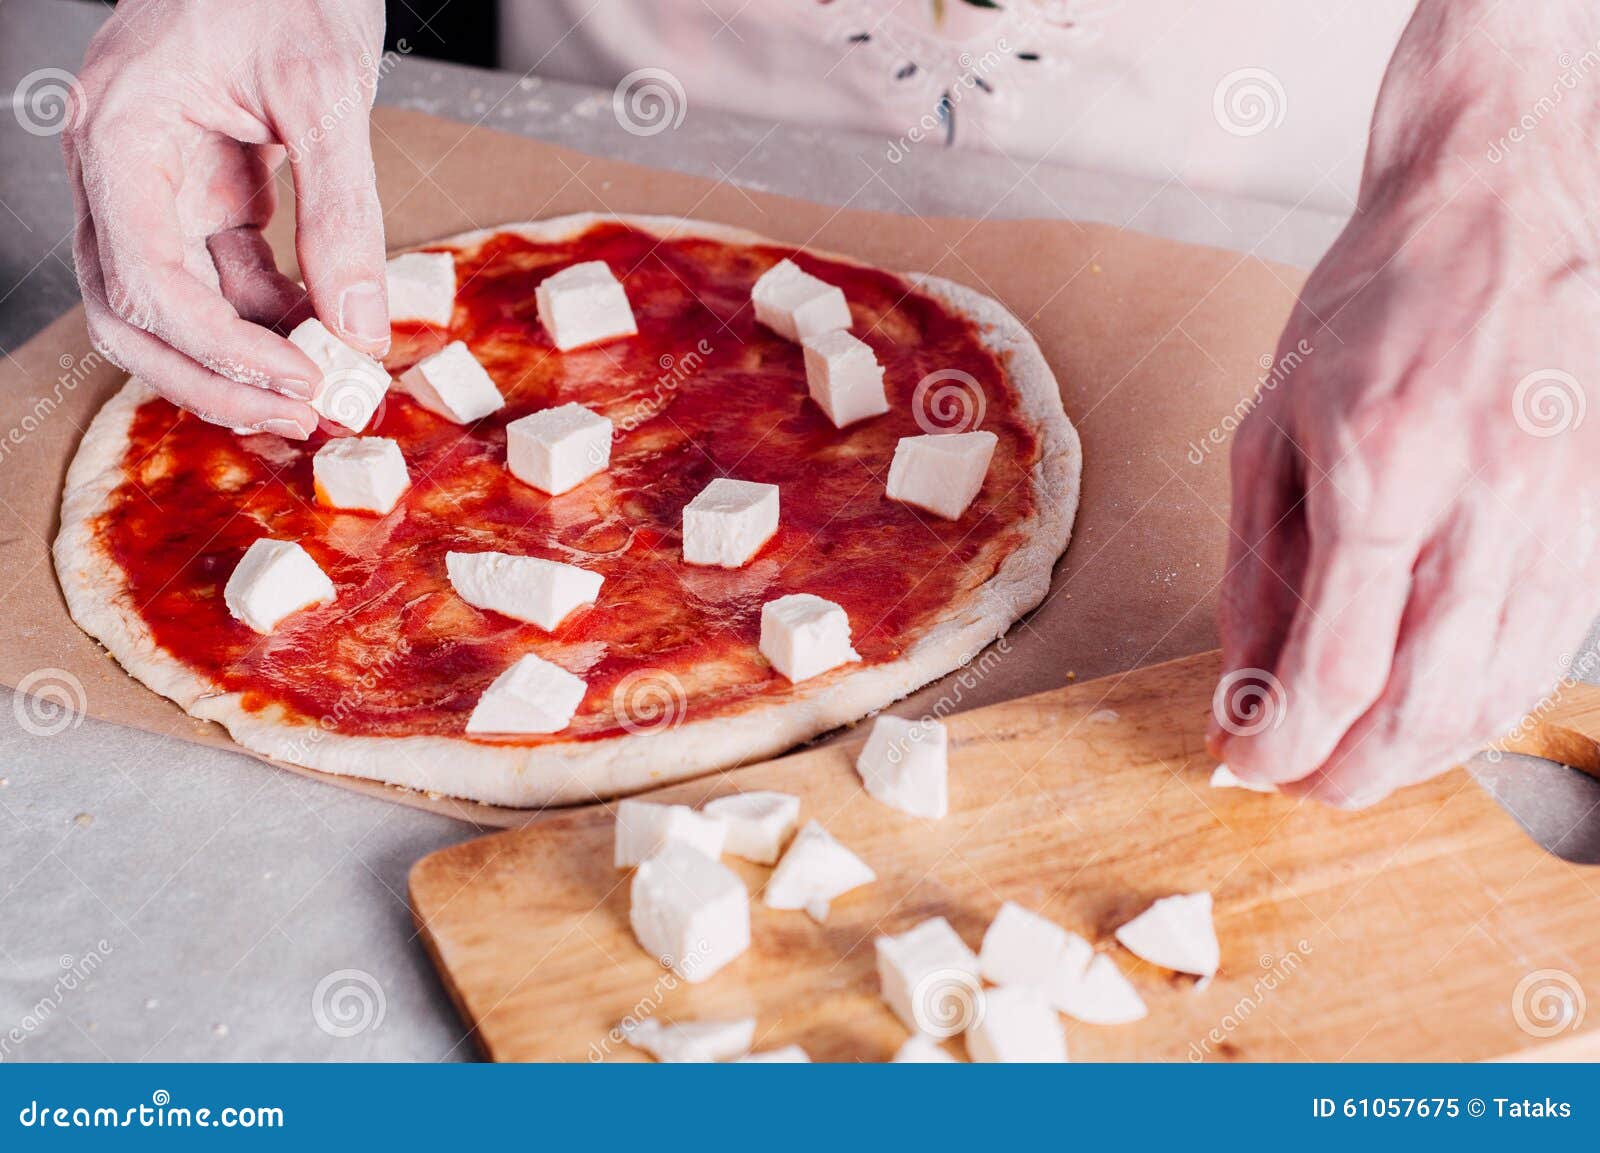 когда нужно класть сыр в пиццу в духовке фото 2